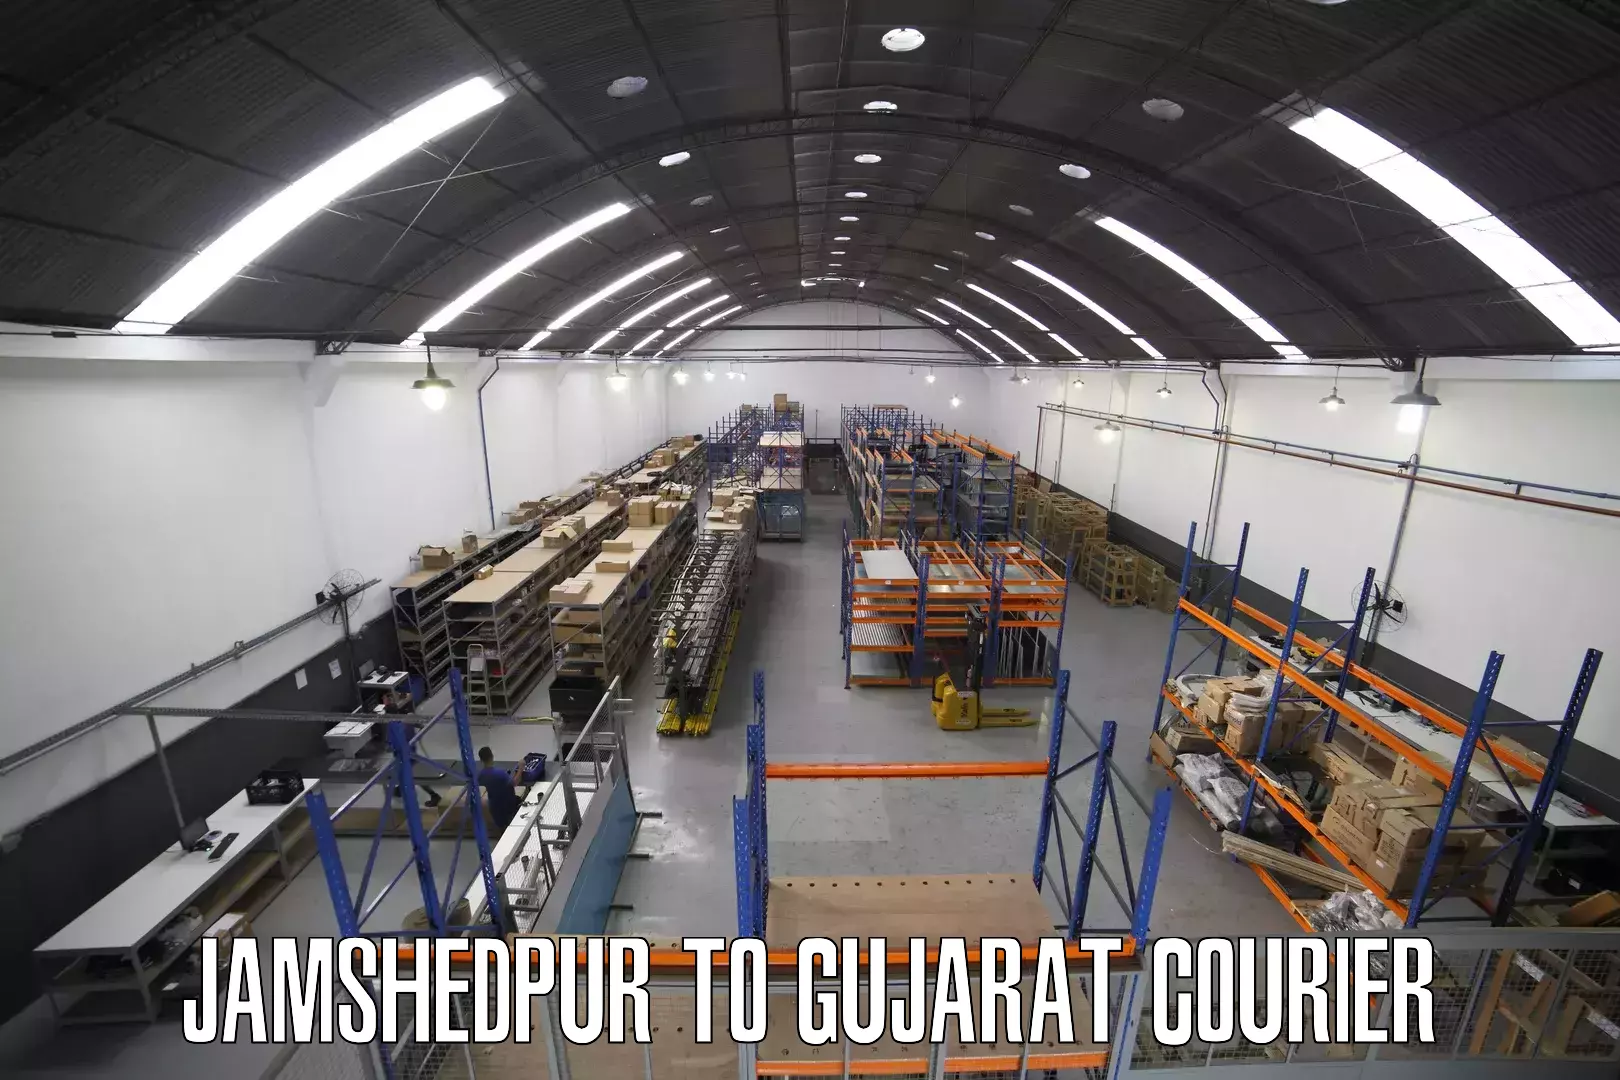 Courier service comparison Jamshedpur to Gujarat